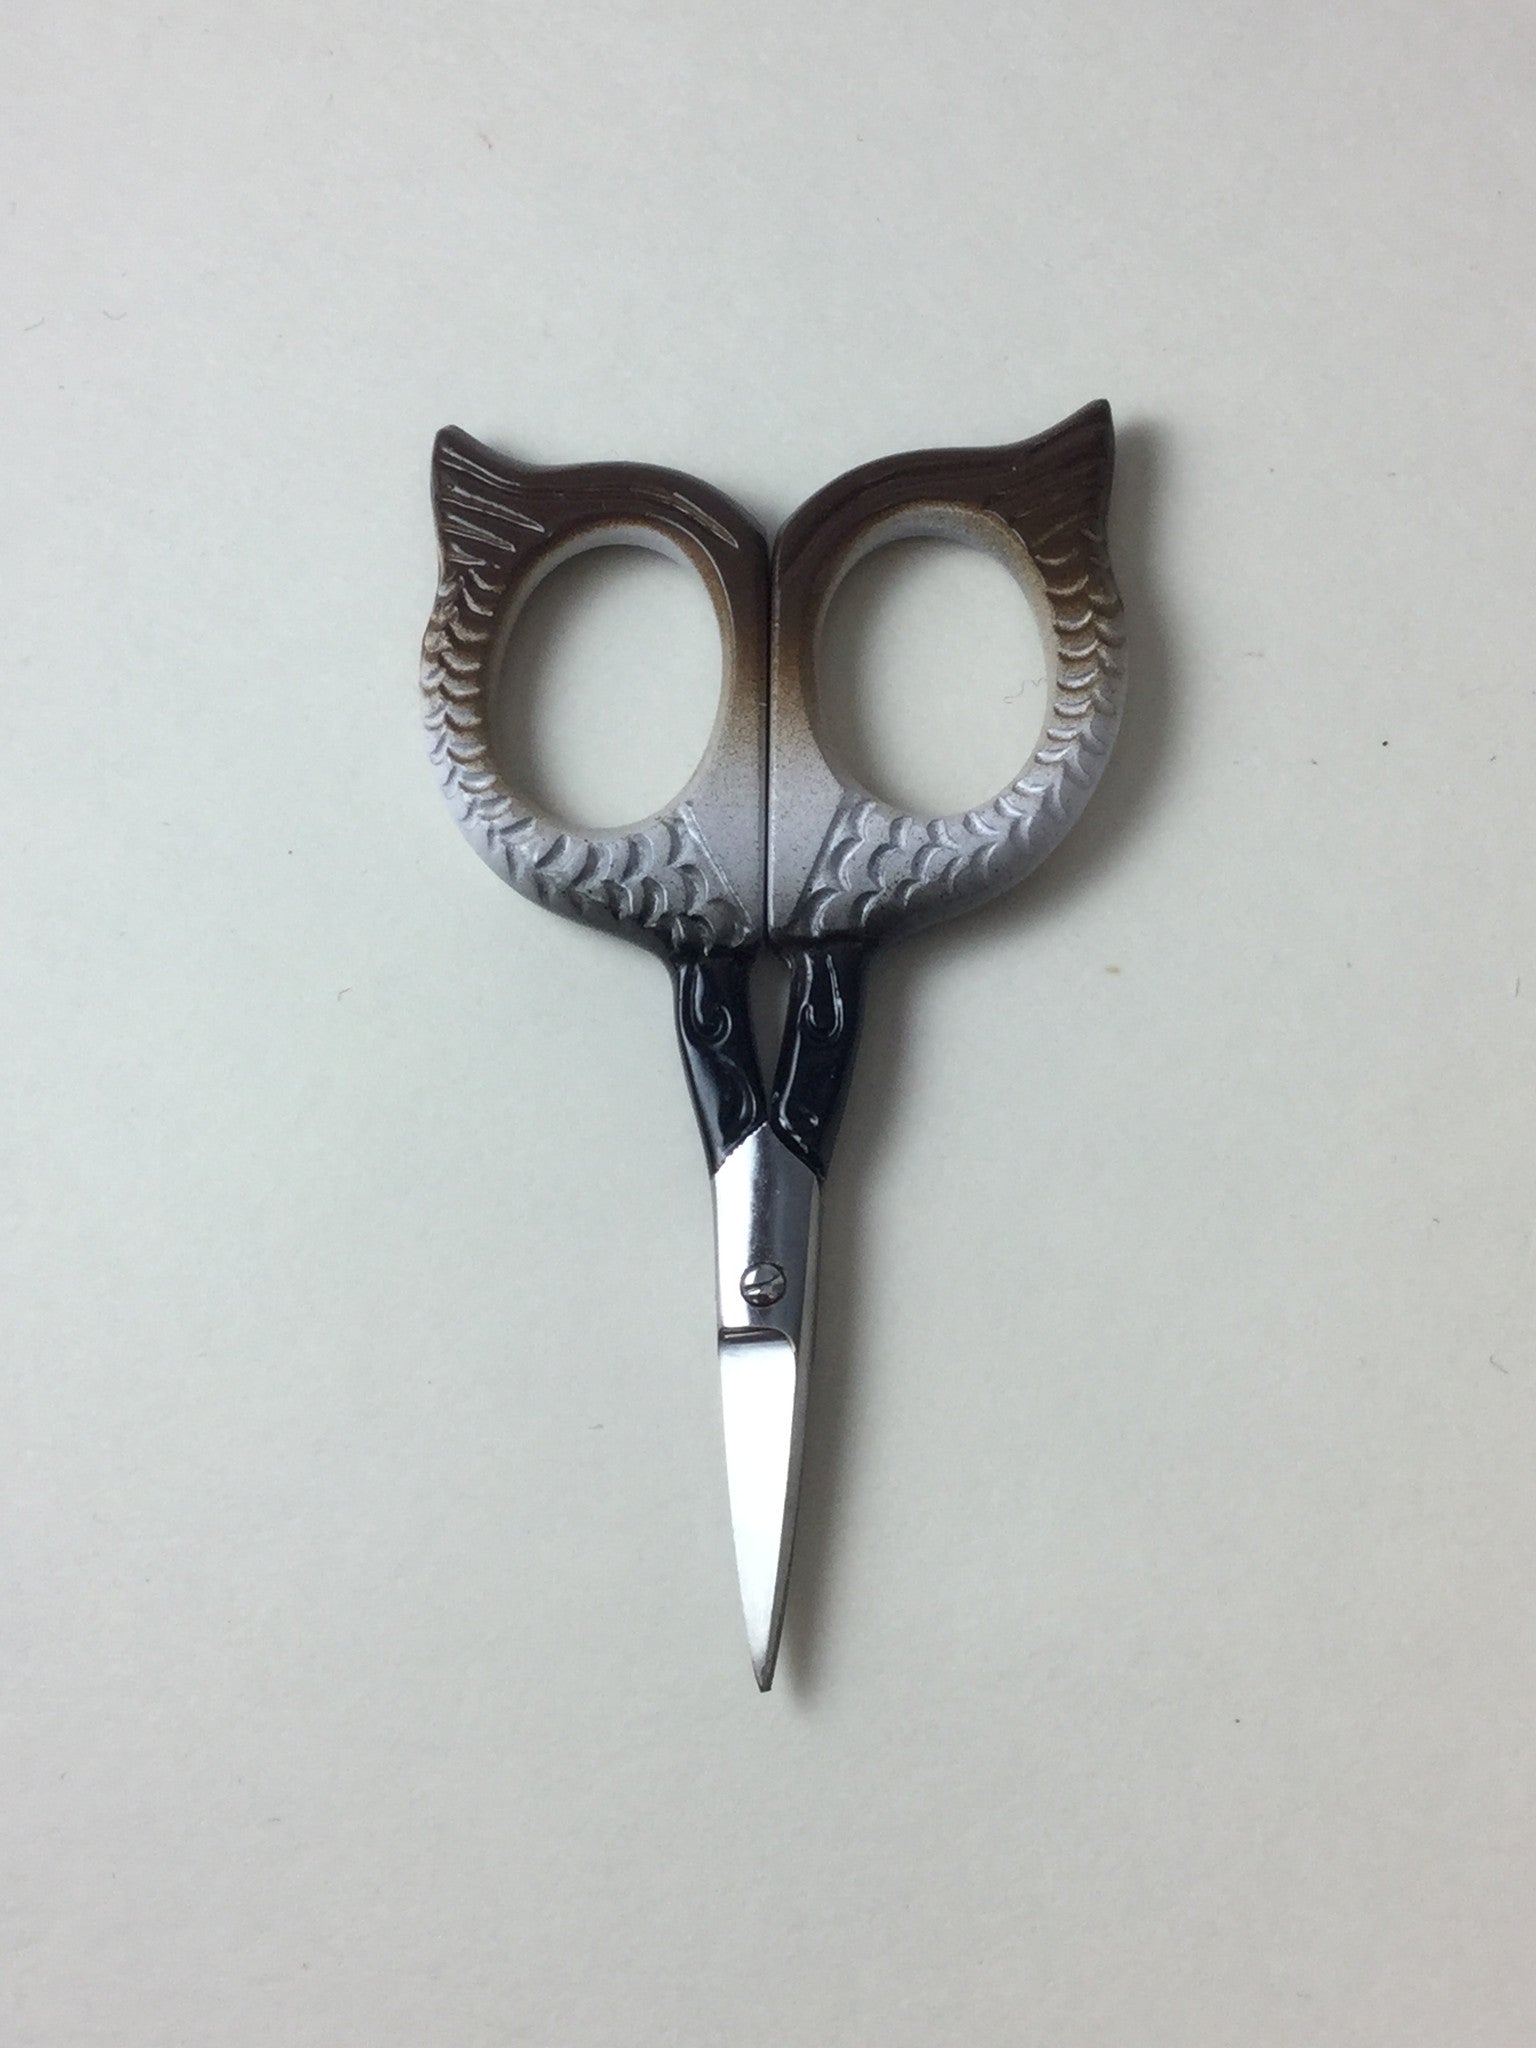 Owl scissors